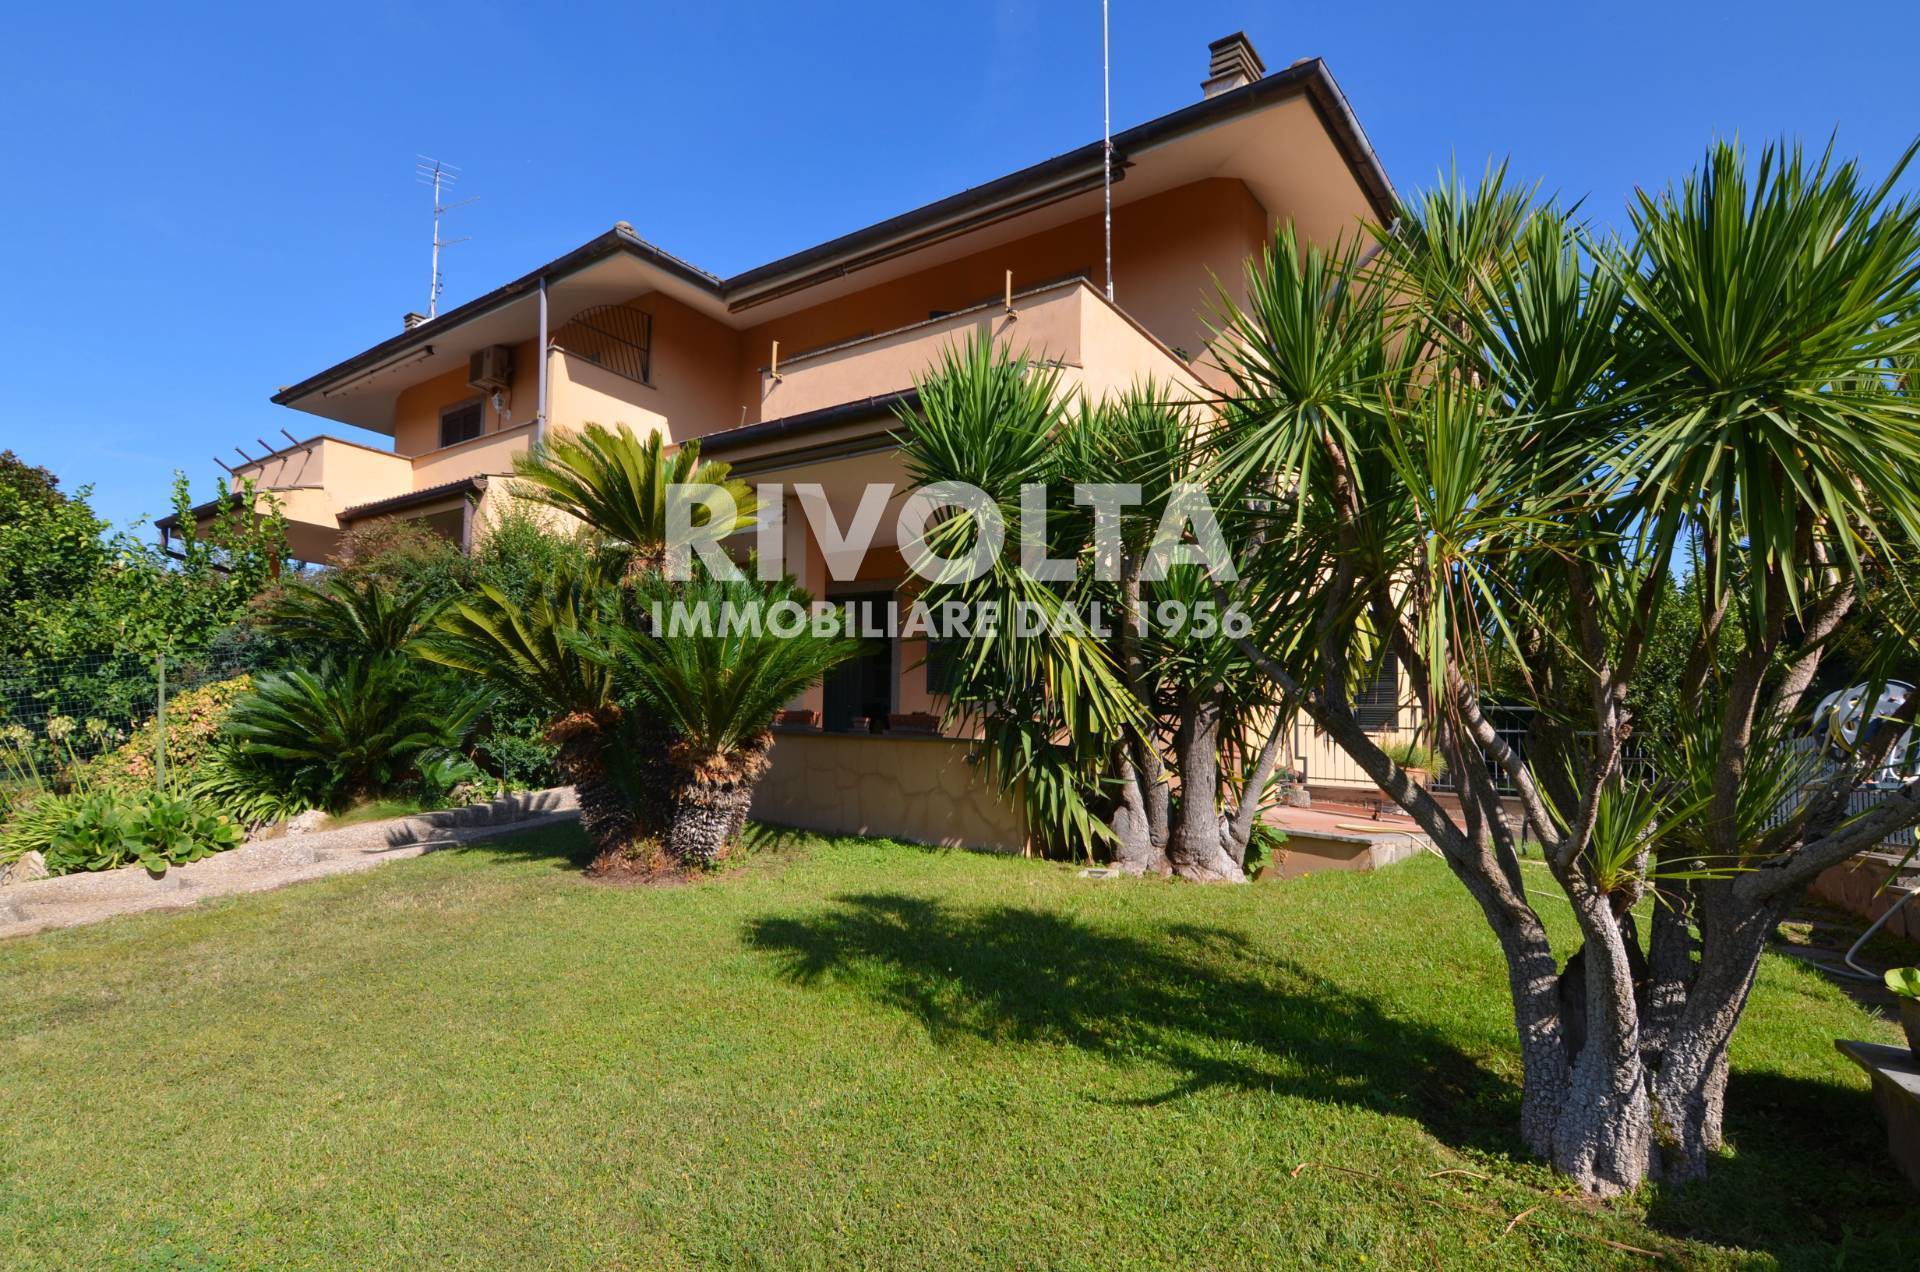 Villa in vendita a Ariccia, 5 locali, prezzo € 350.000 | CambioCasa.it